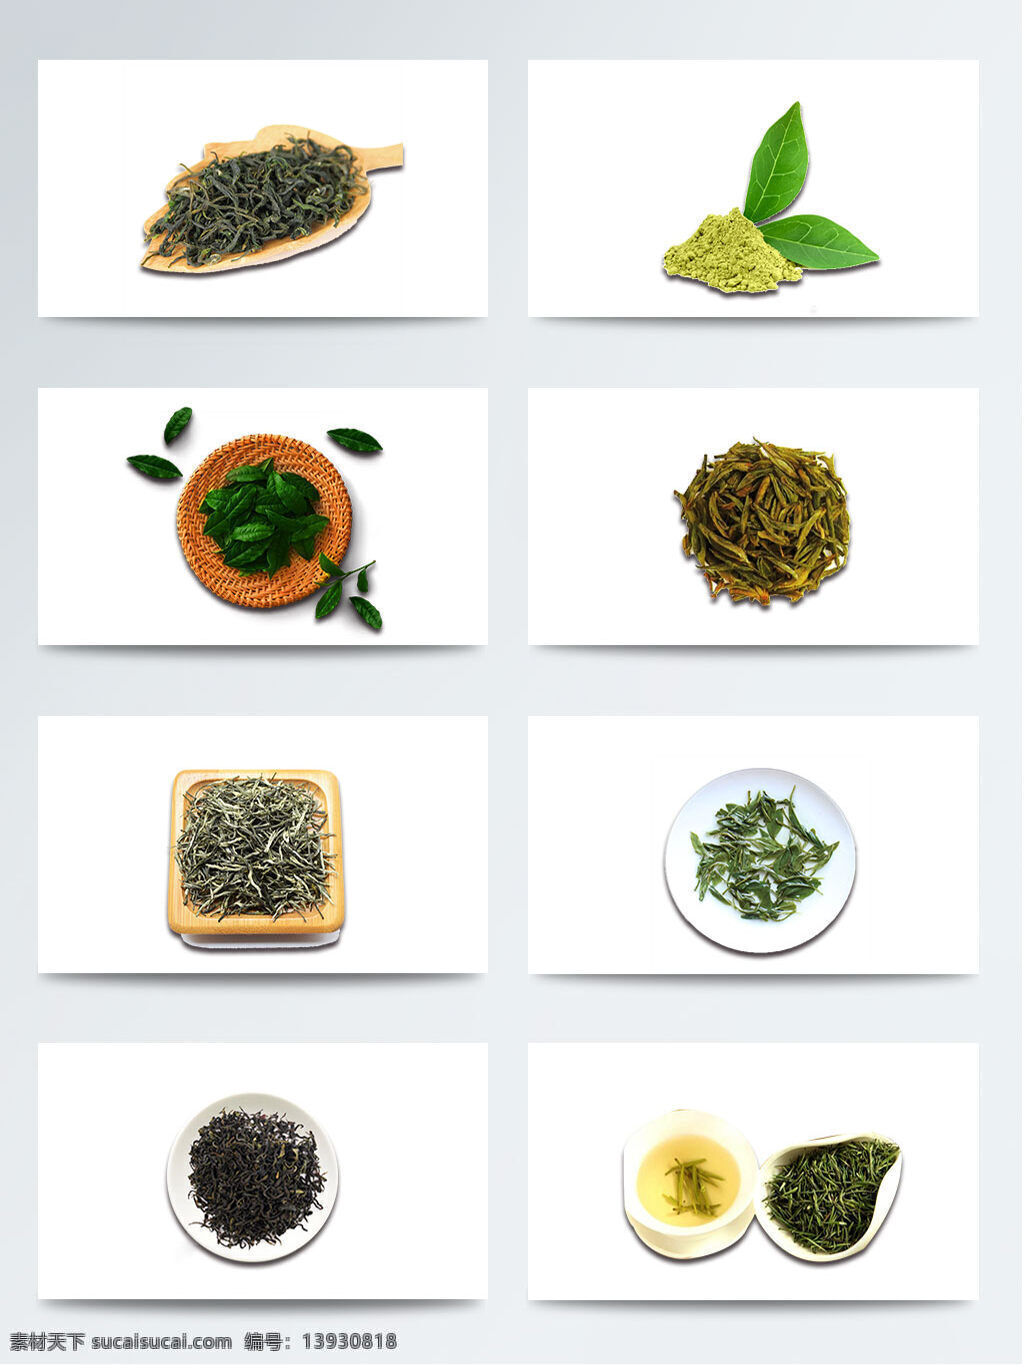 晒 干 绿茶 叶子 元素 茶 茶叶 春茶 绿色 许多茶叶 植物